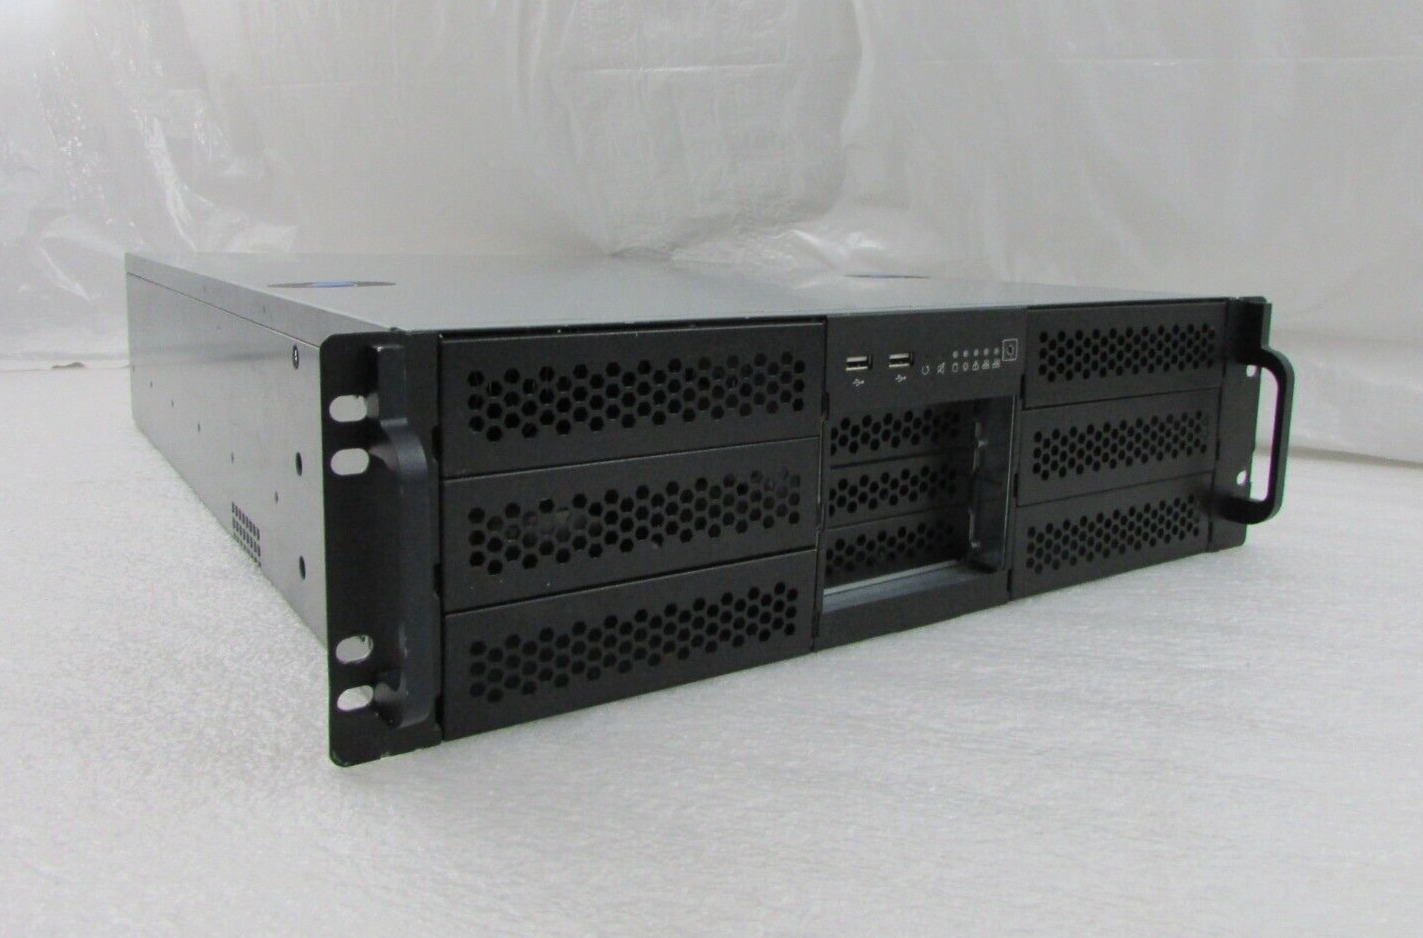 Chenbro RM31300 3U Rack-Mountable 9 Bay Server Chassis ~ No Power